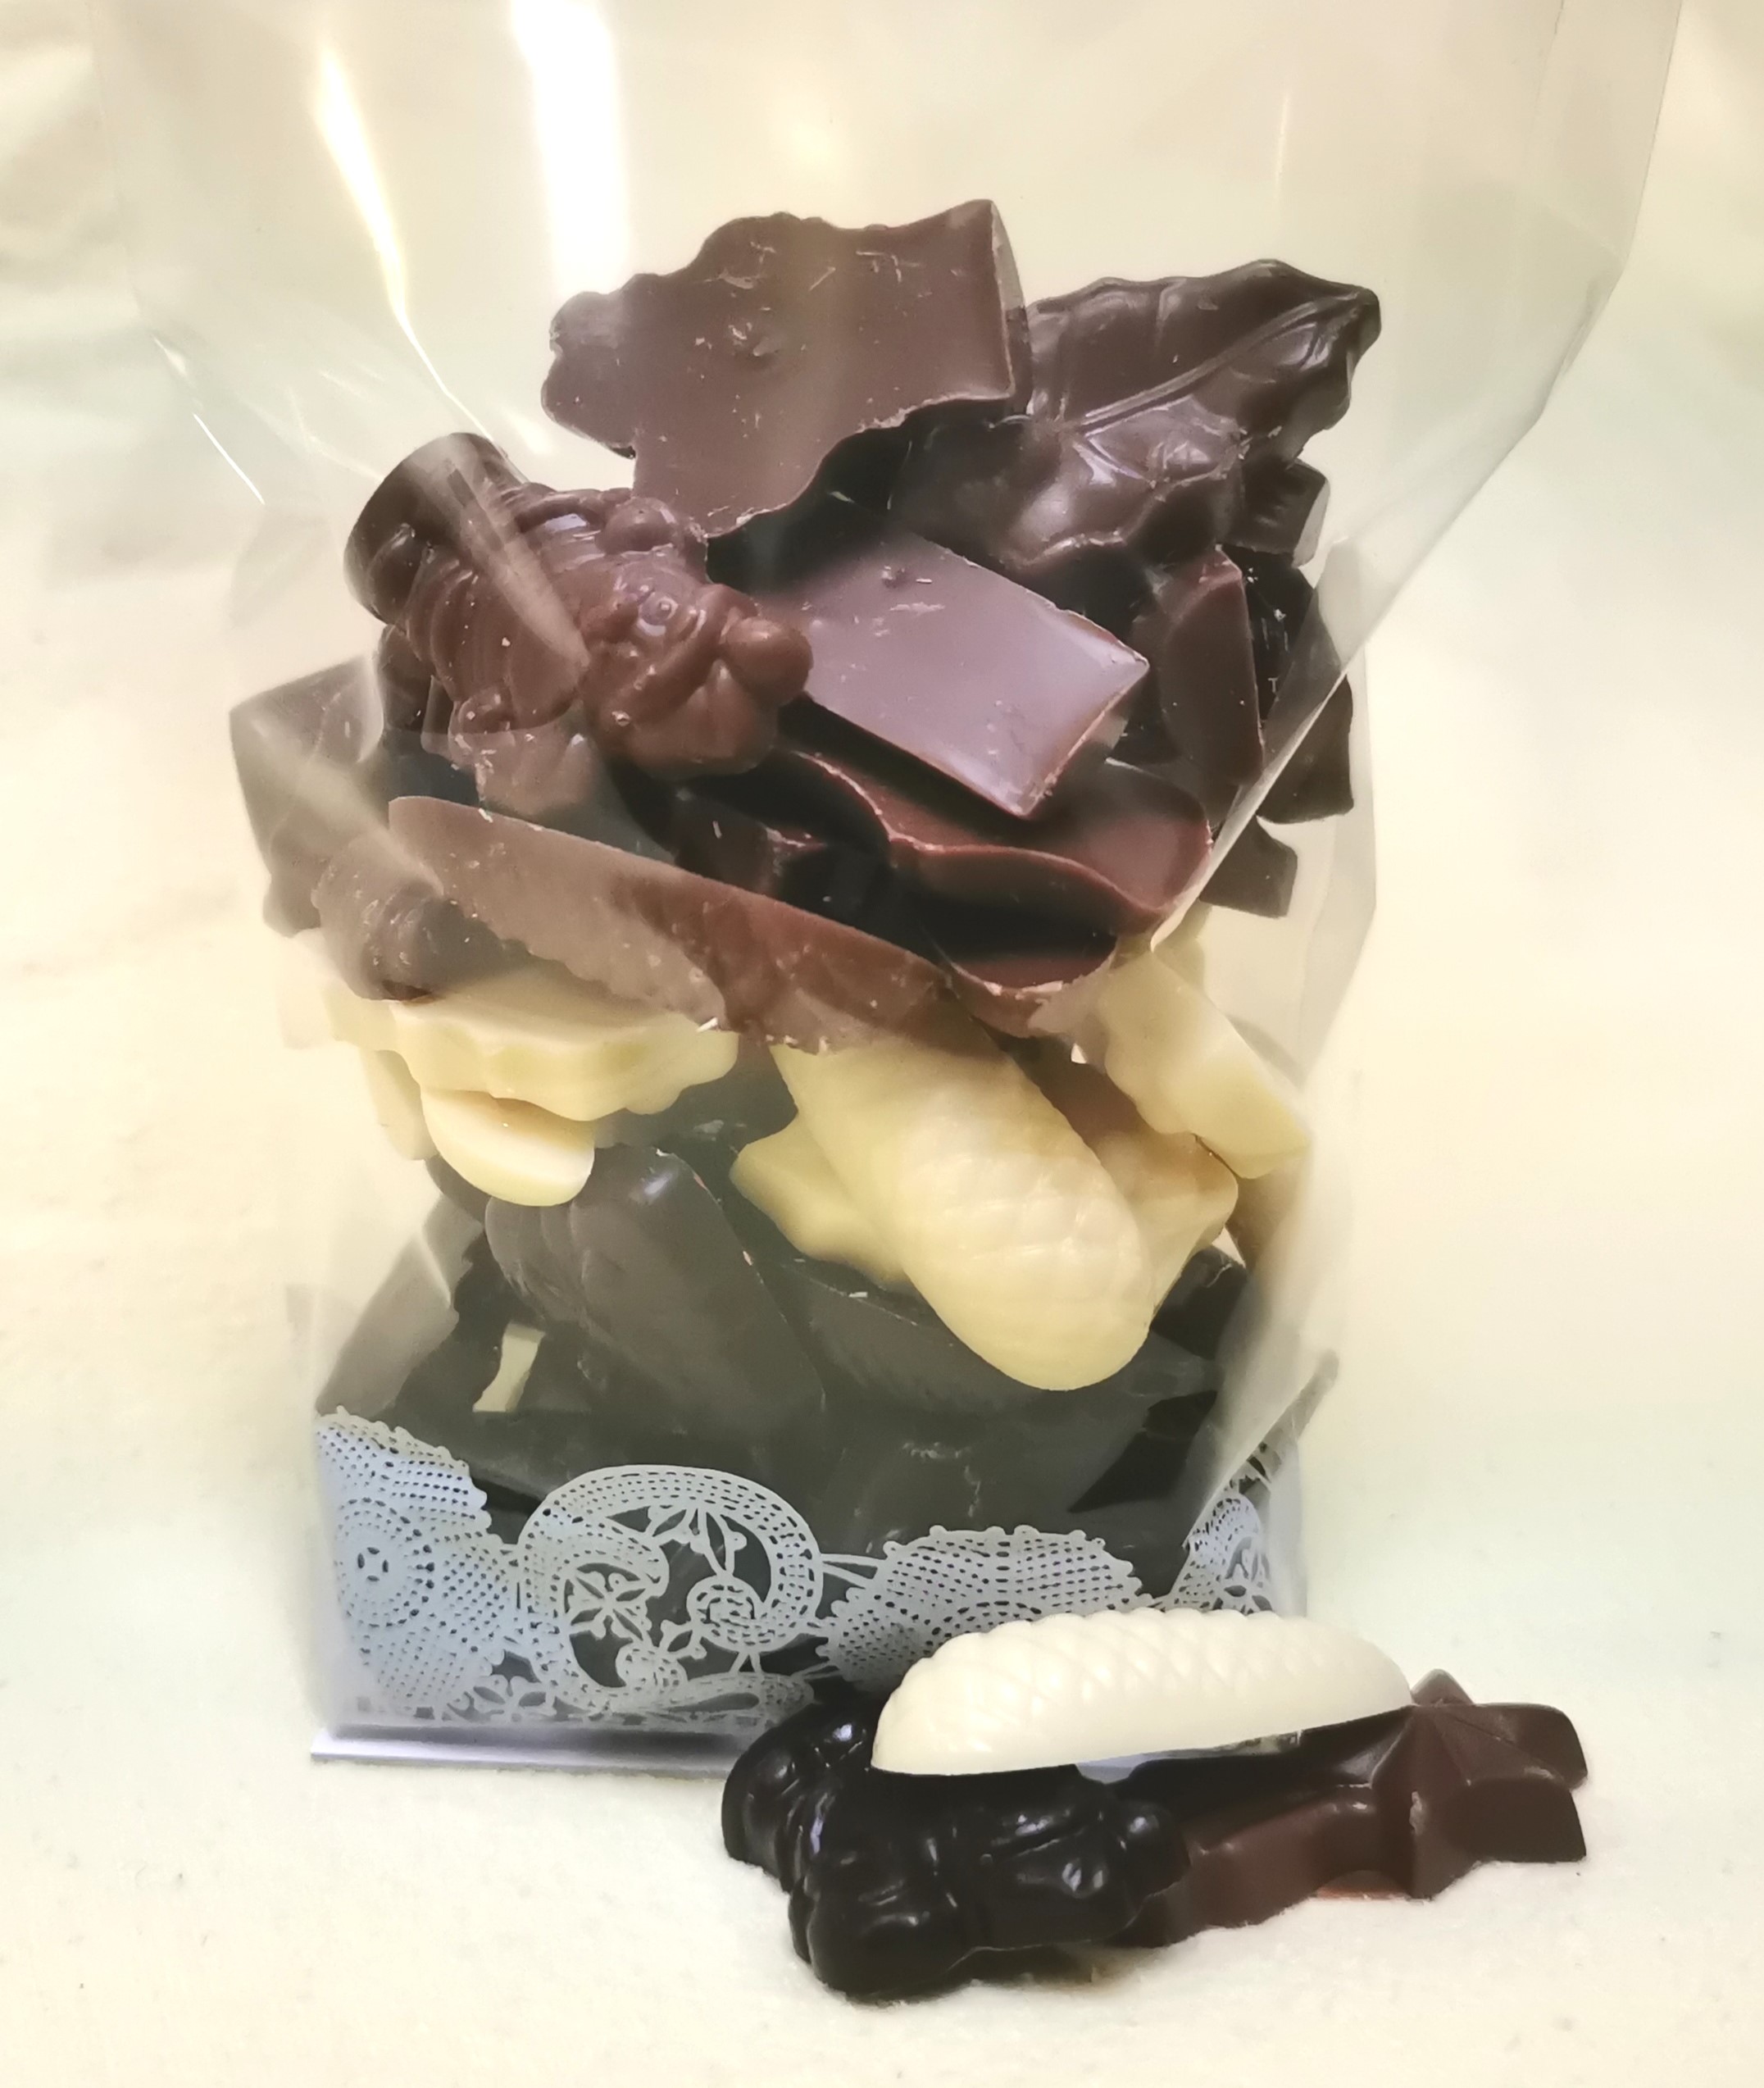 Bouchons chocolat à la liqueur de marc de champagne – Ballotin 500g -  Chocogil – boutique de chocolats en ligne